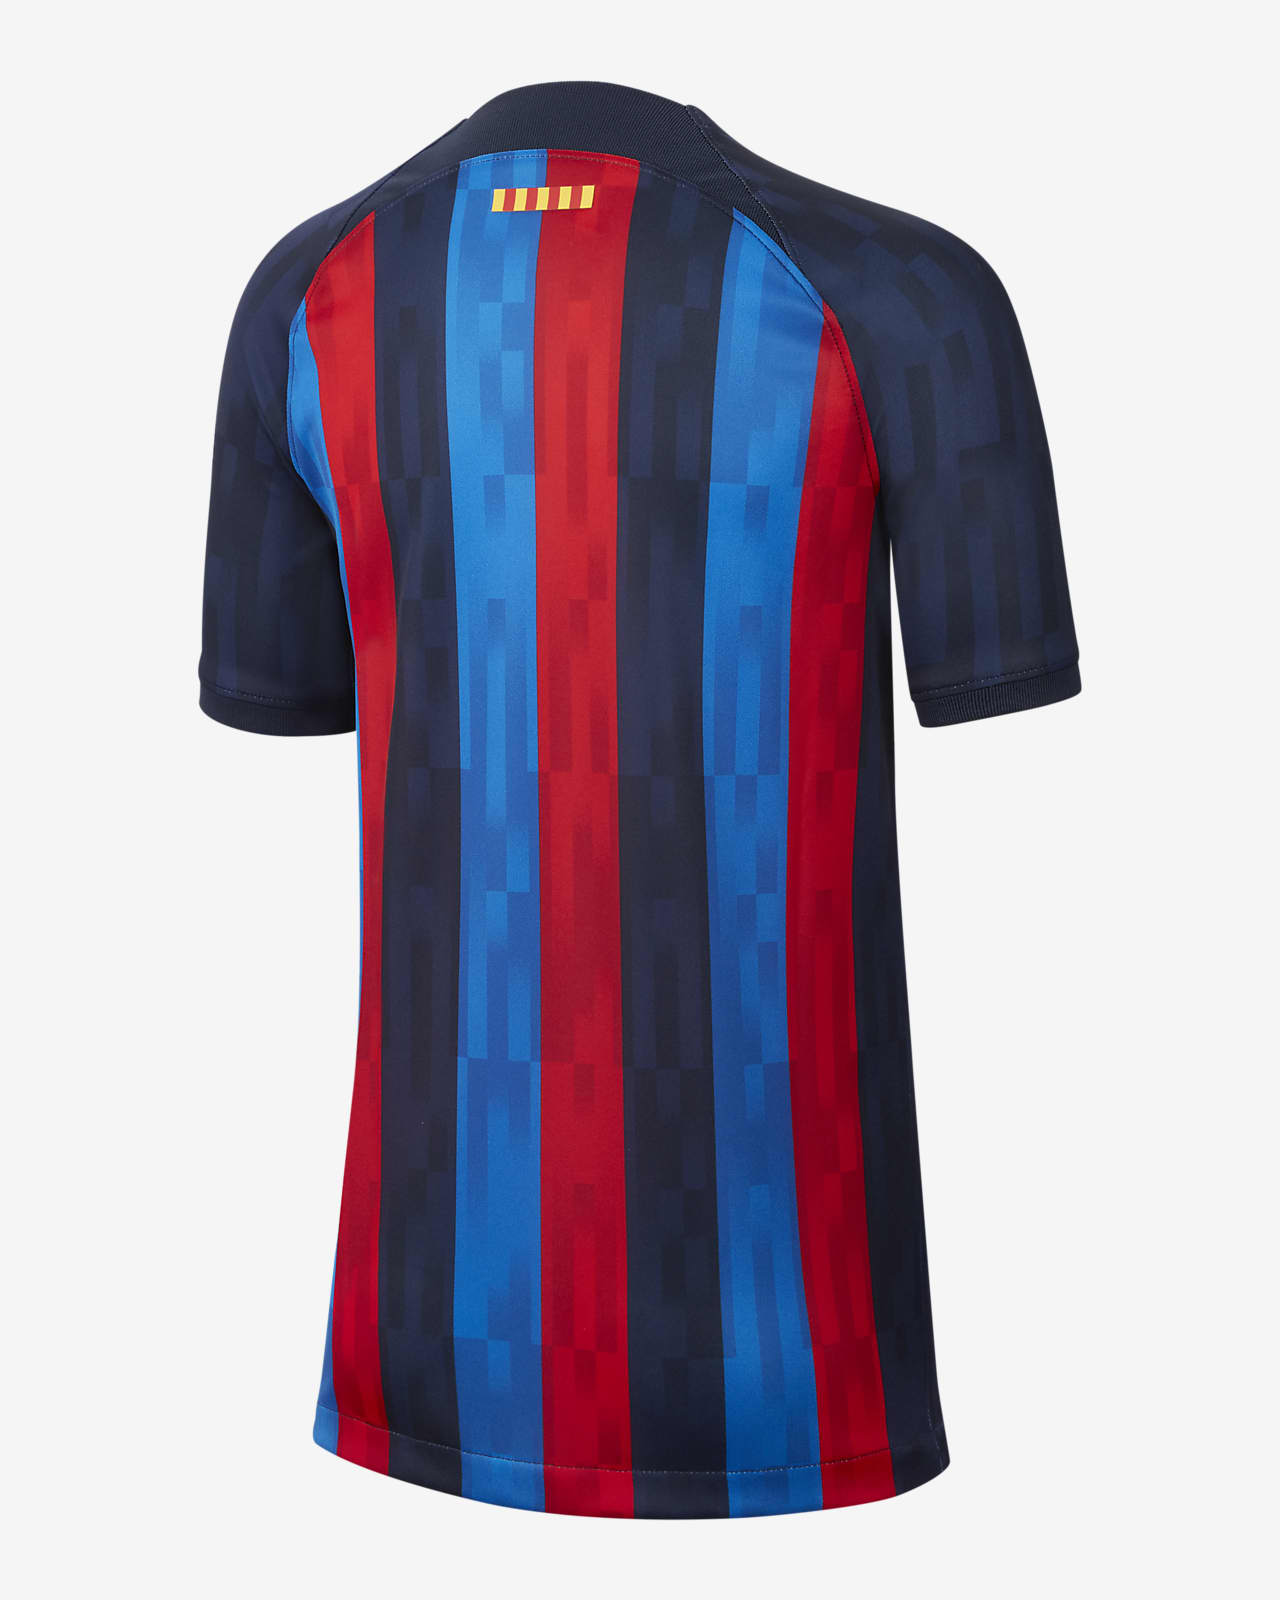 Primera equipación Stadium FC Barcelona 2022/23 Camiseta de fútbol Nike  Dri-FIT - Niño/a. Nike ES